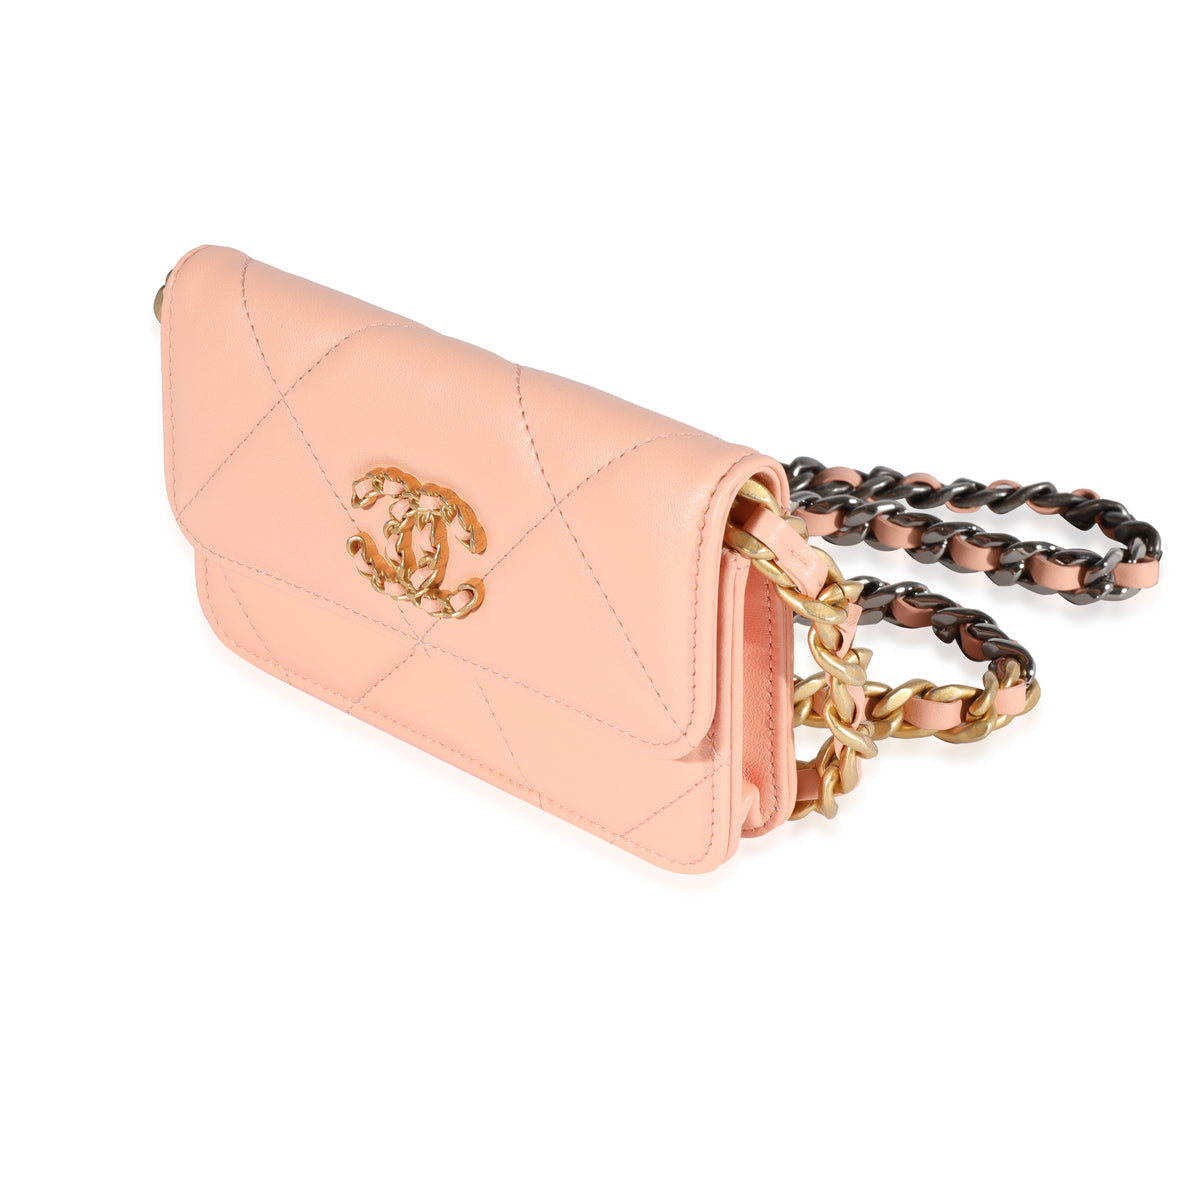 Chanel Lambskin Bags, Luxury Resale